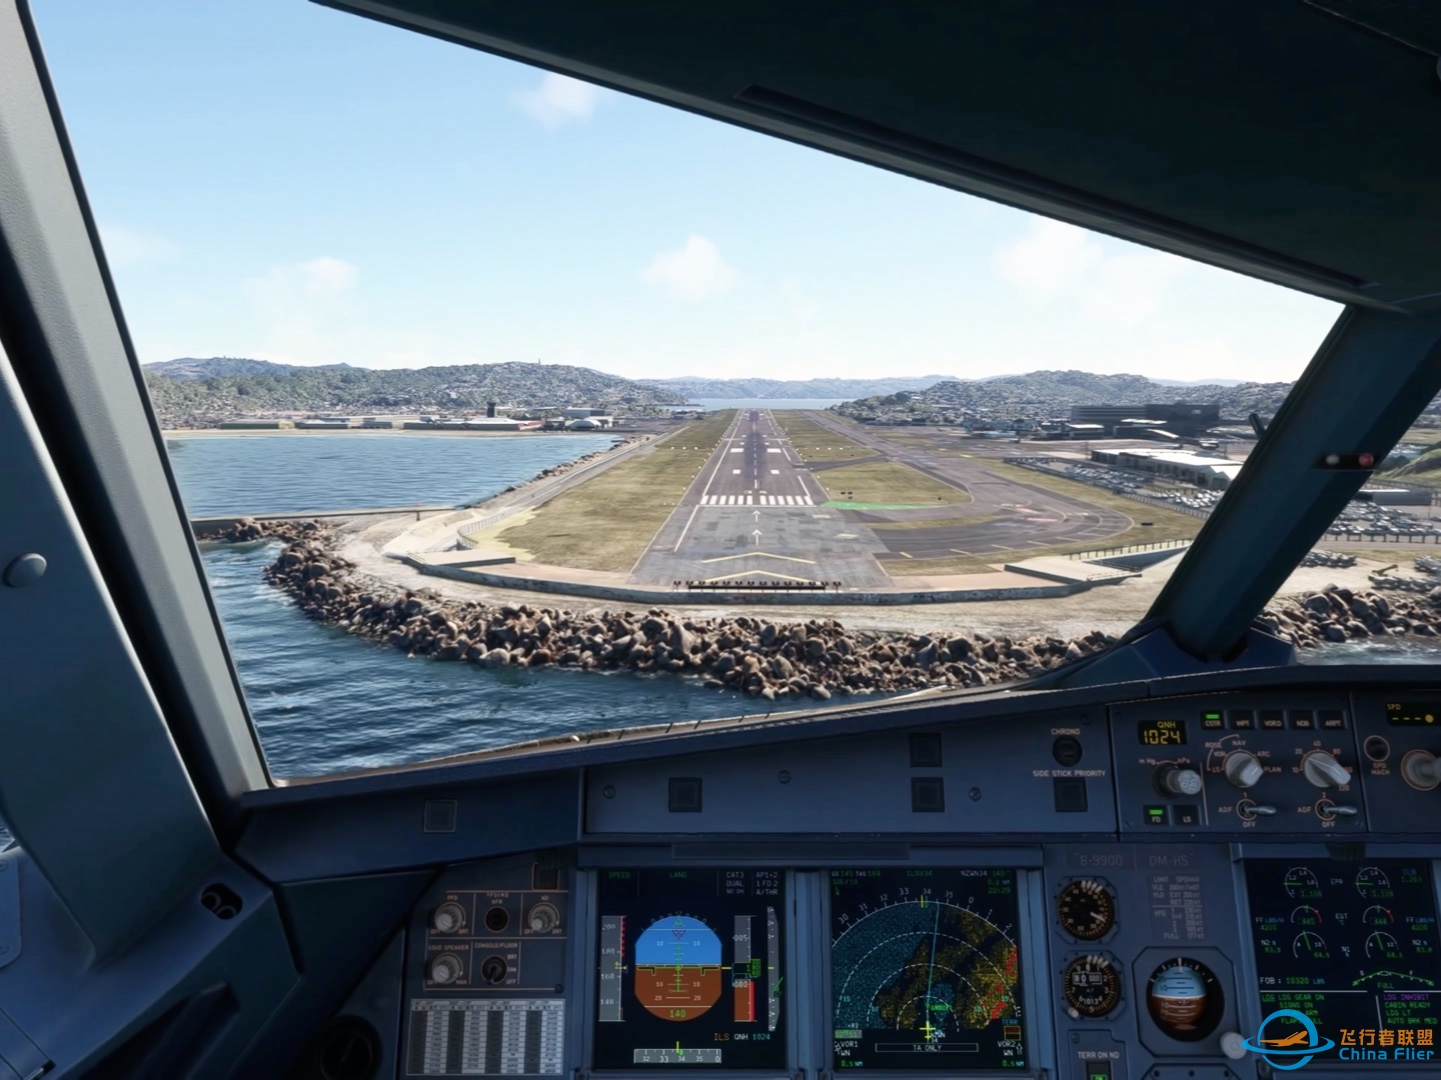 降落微软飞行模拟2020最喜欢的机场新西兰惠灵顿机场-4921 